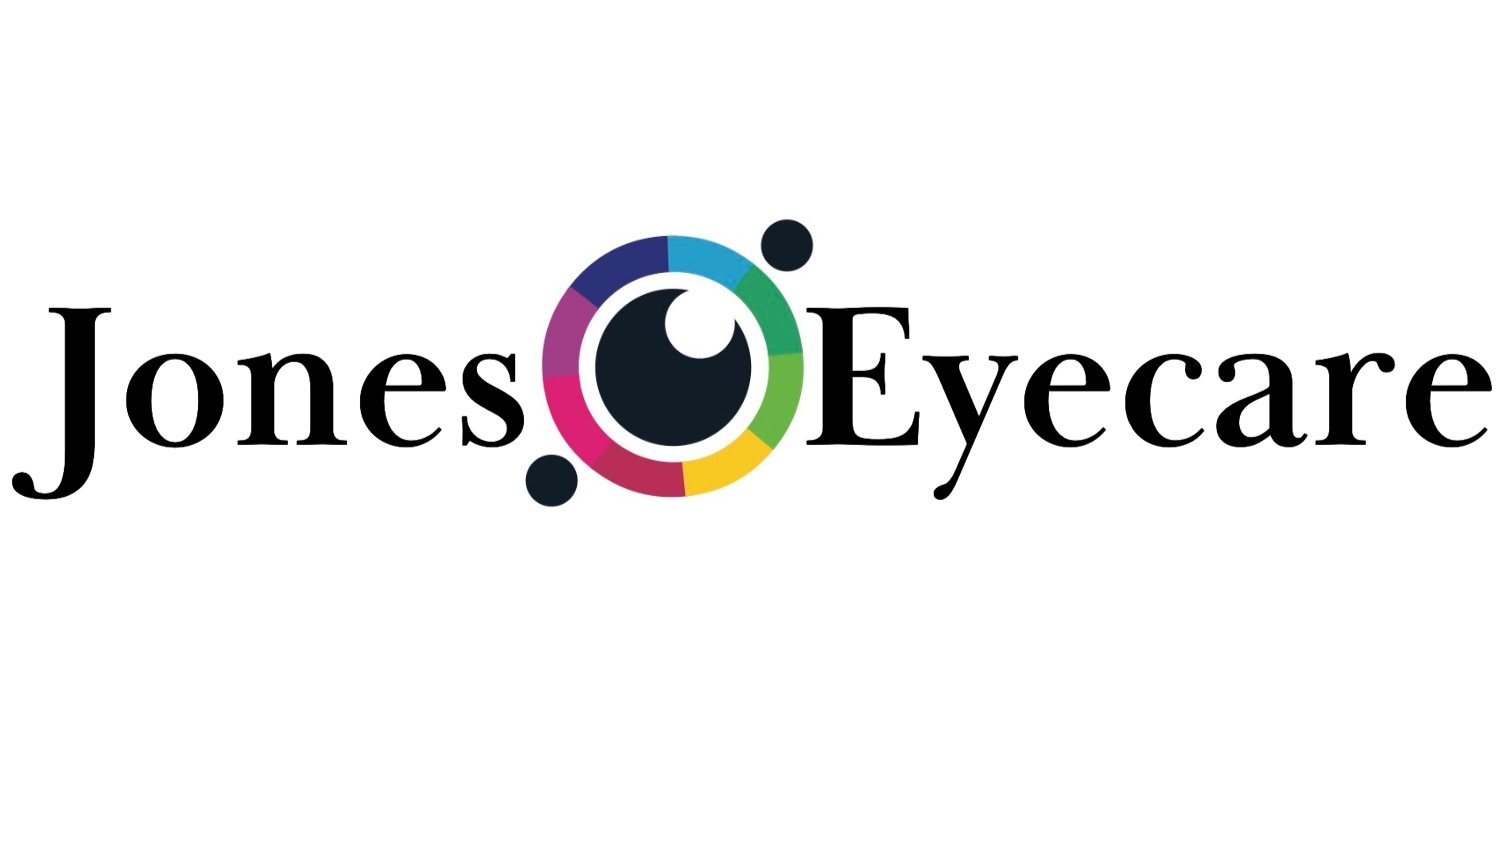 Jones Eyecare